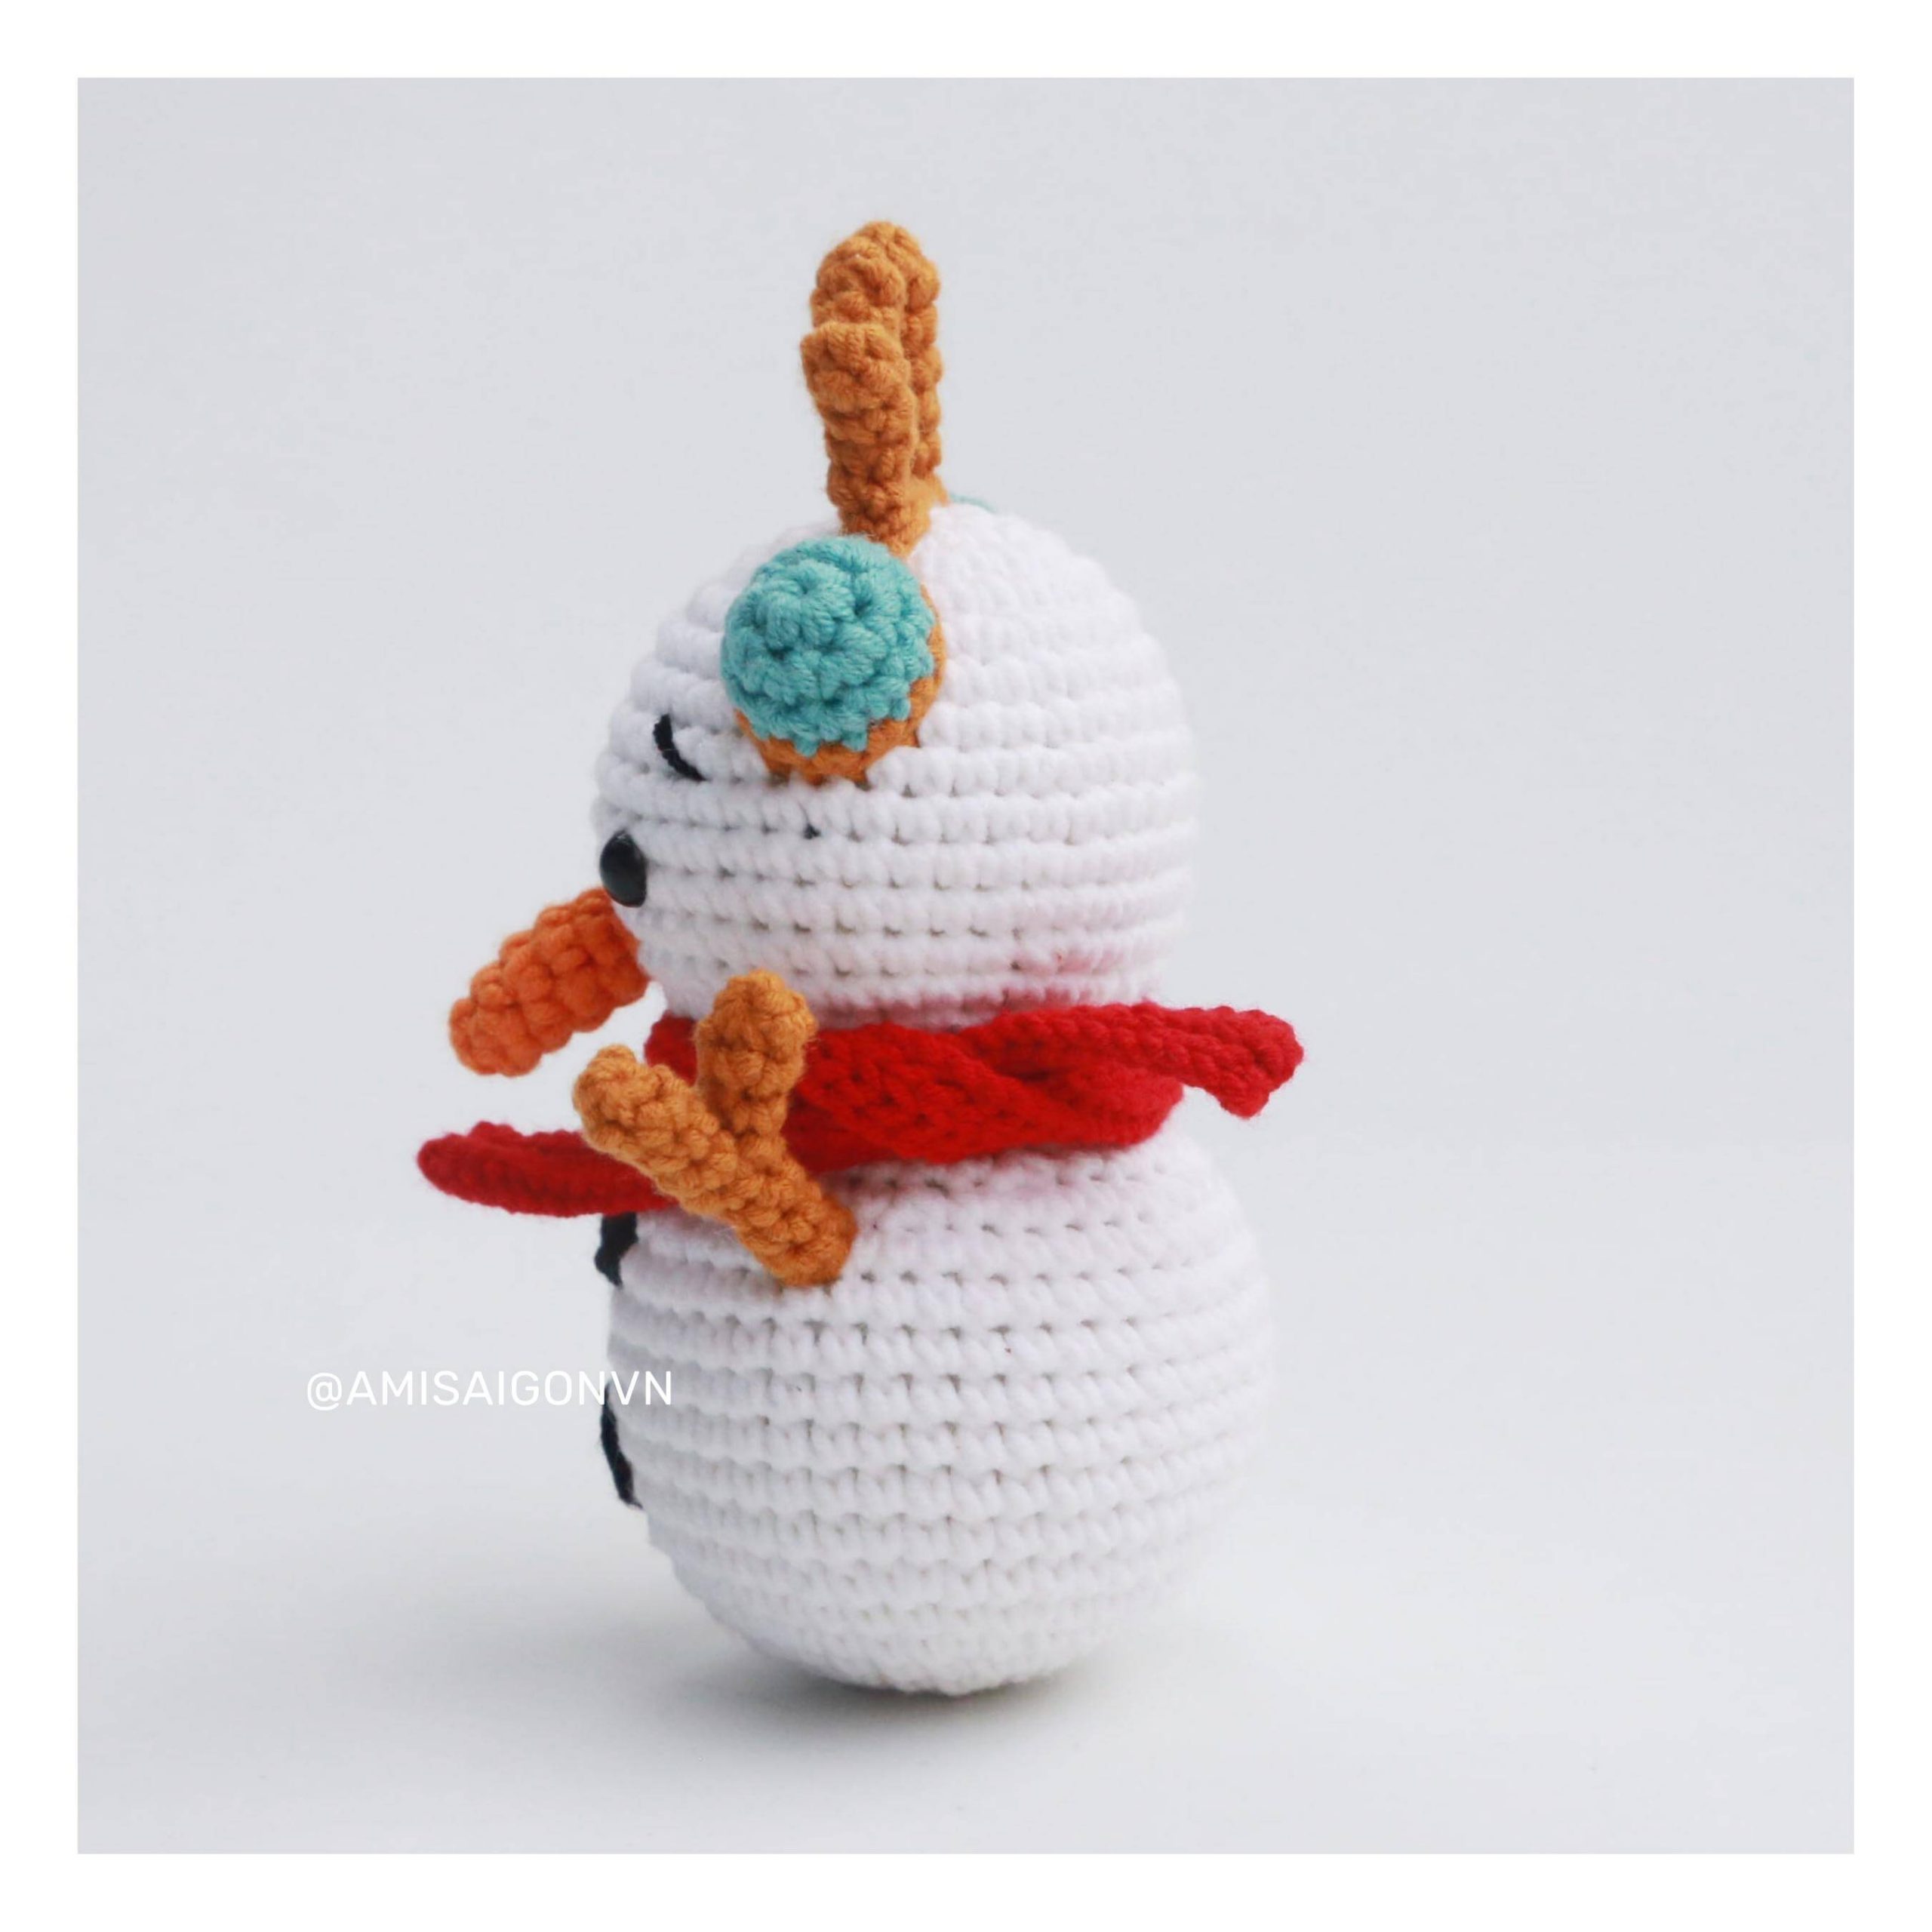 snowman-amigurumi-crochet-pattern-amisaigon (8)